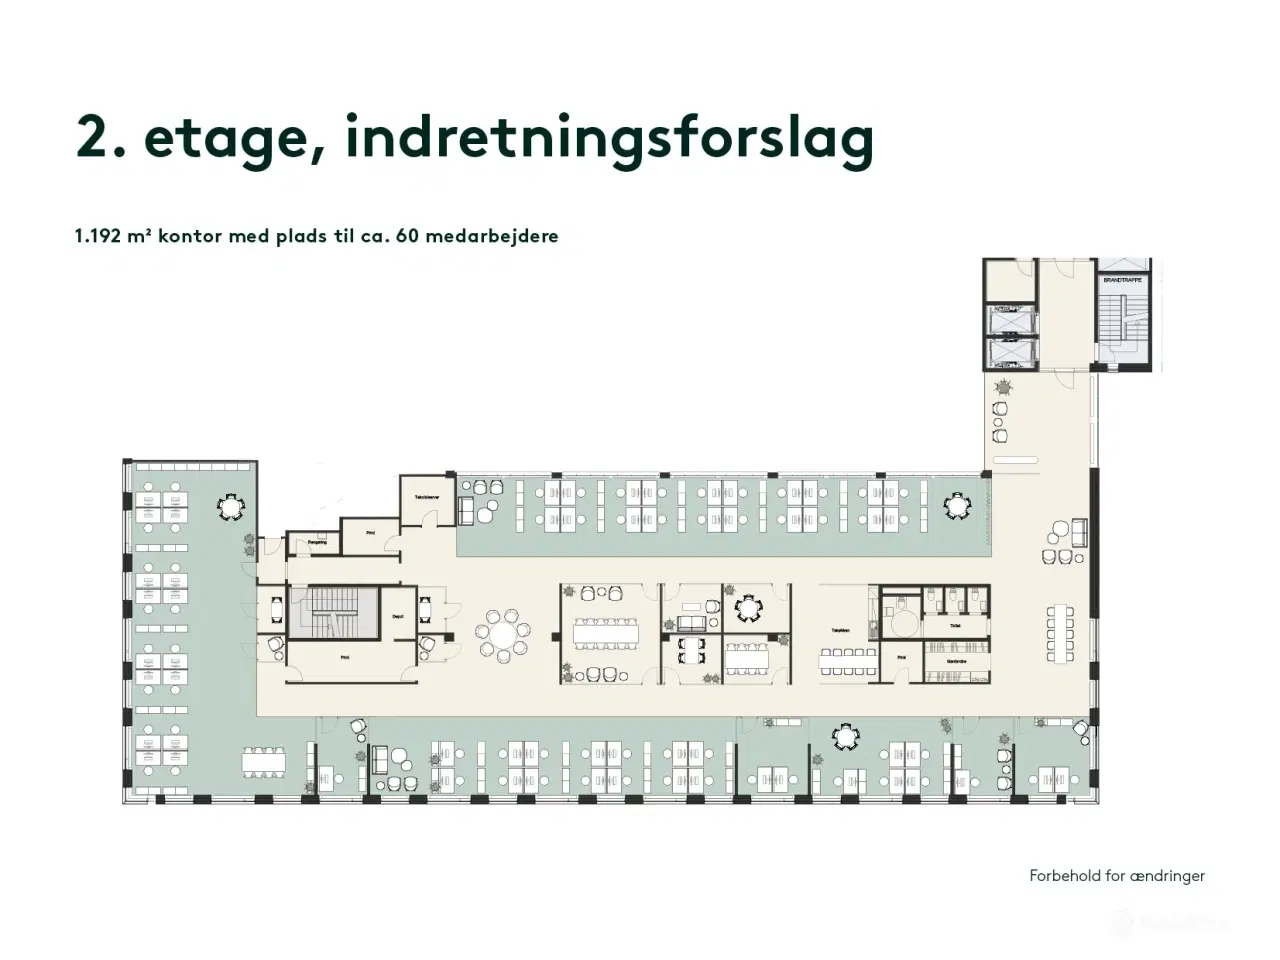 Billede 10 - Kontor i populært flerbrugerhus i Søborg